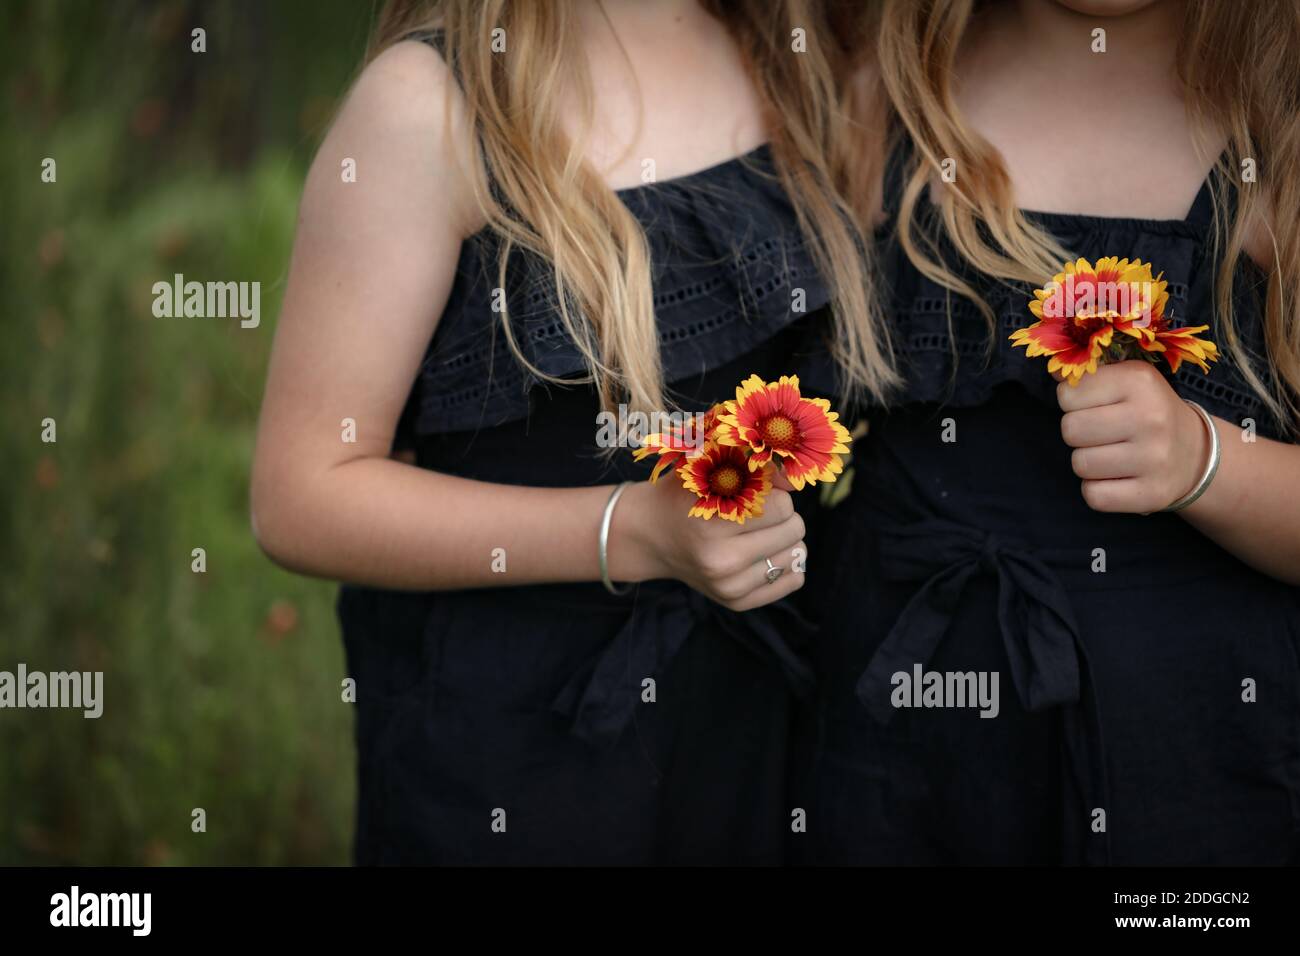 Deux filles dans des robes noires semblables tenant des fleurs dans leur mains Banque D'Images